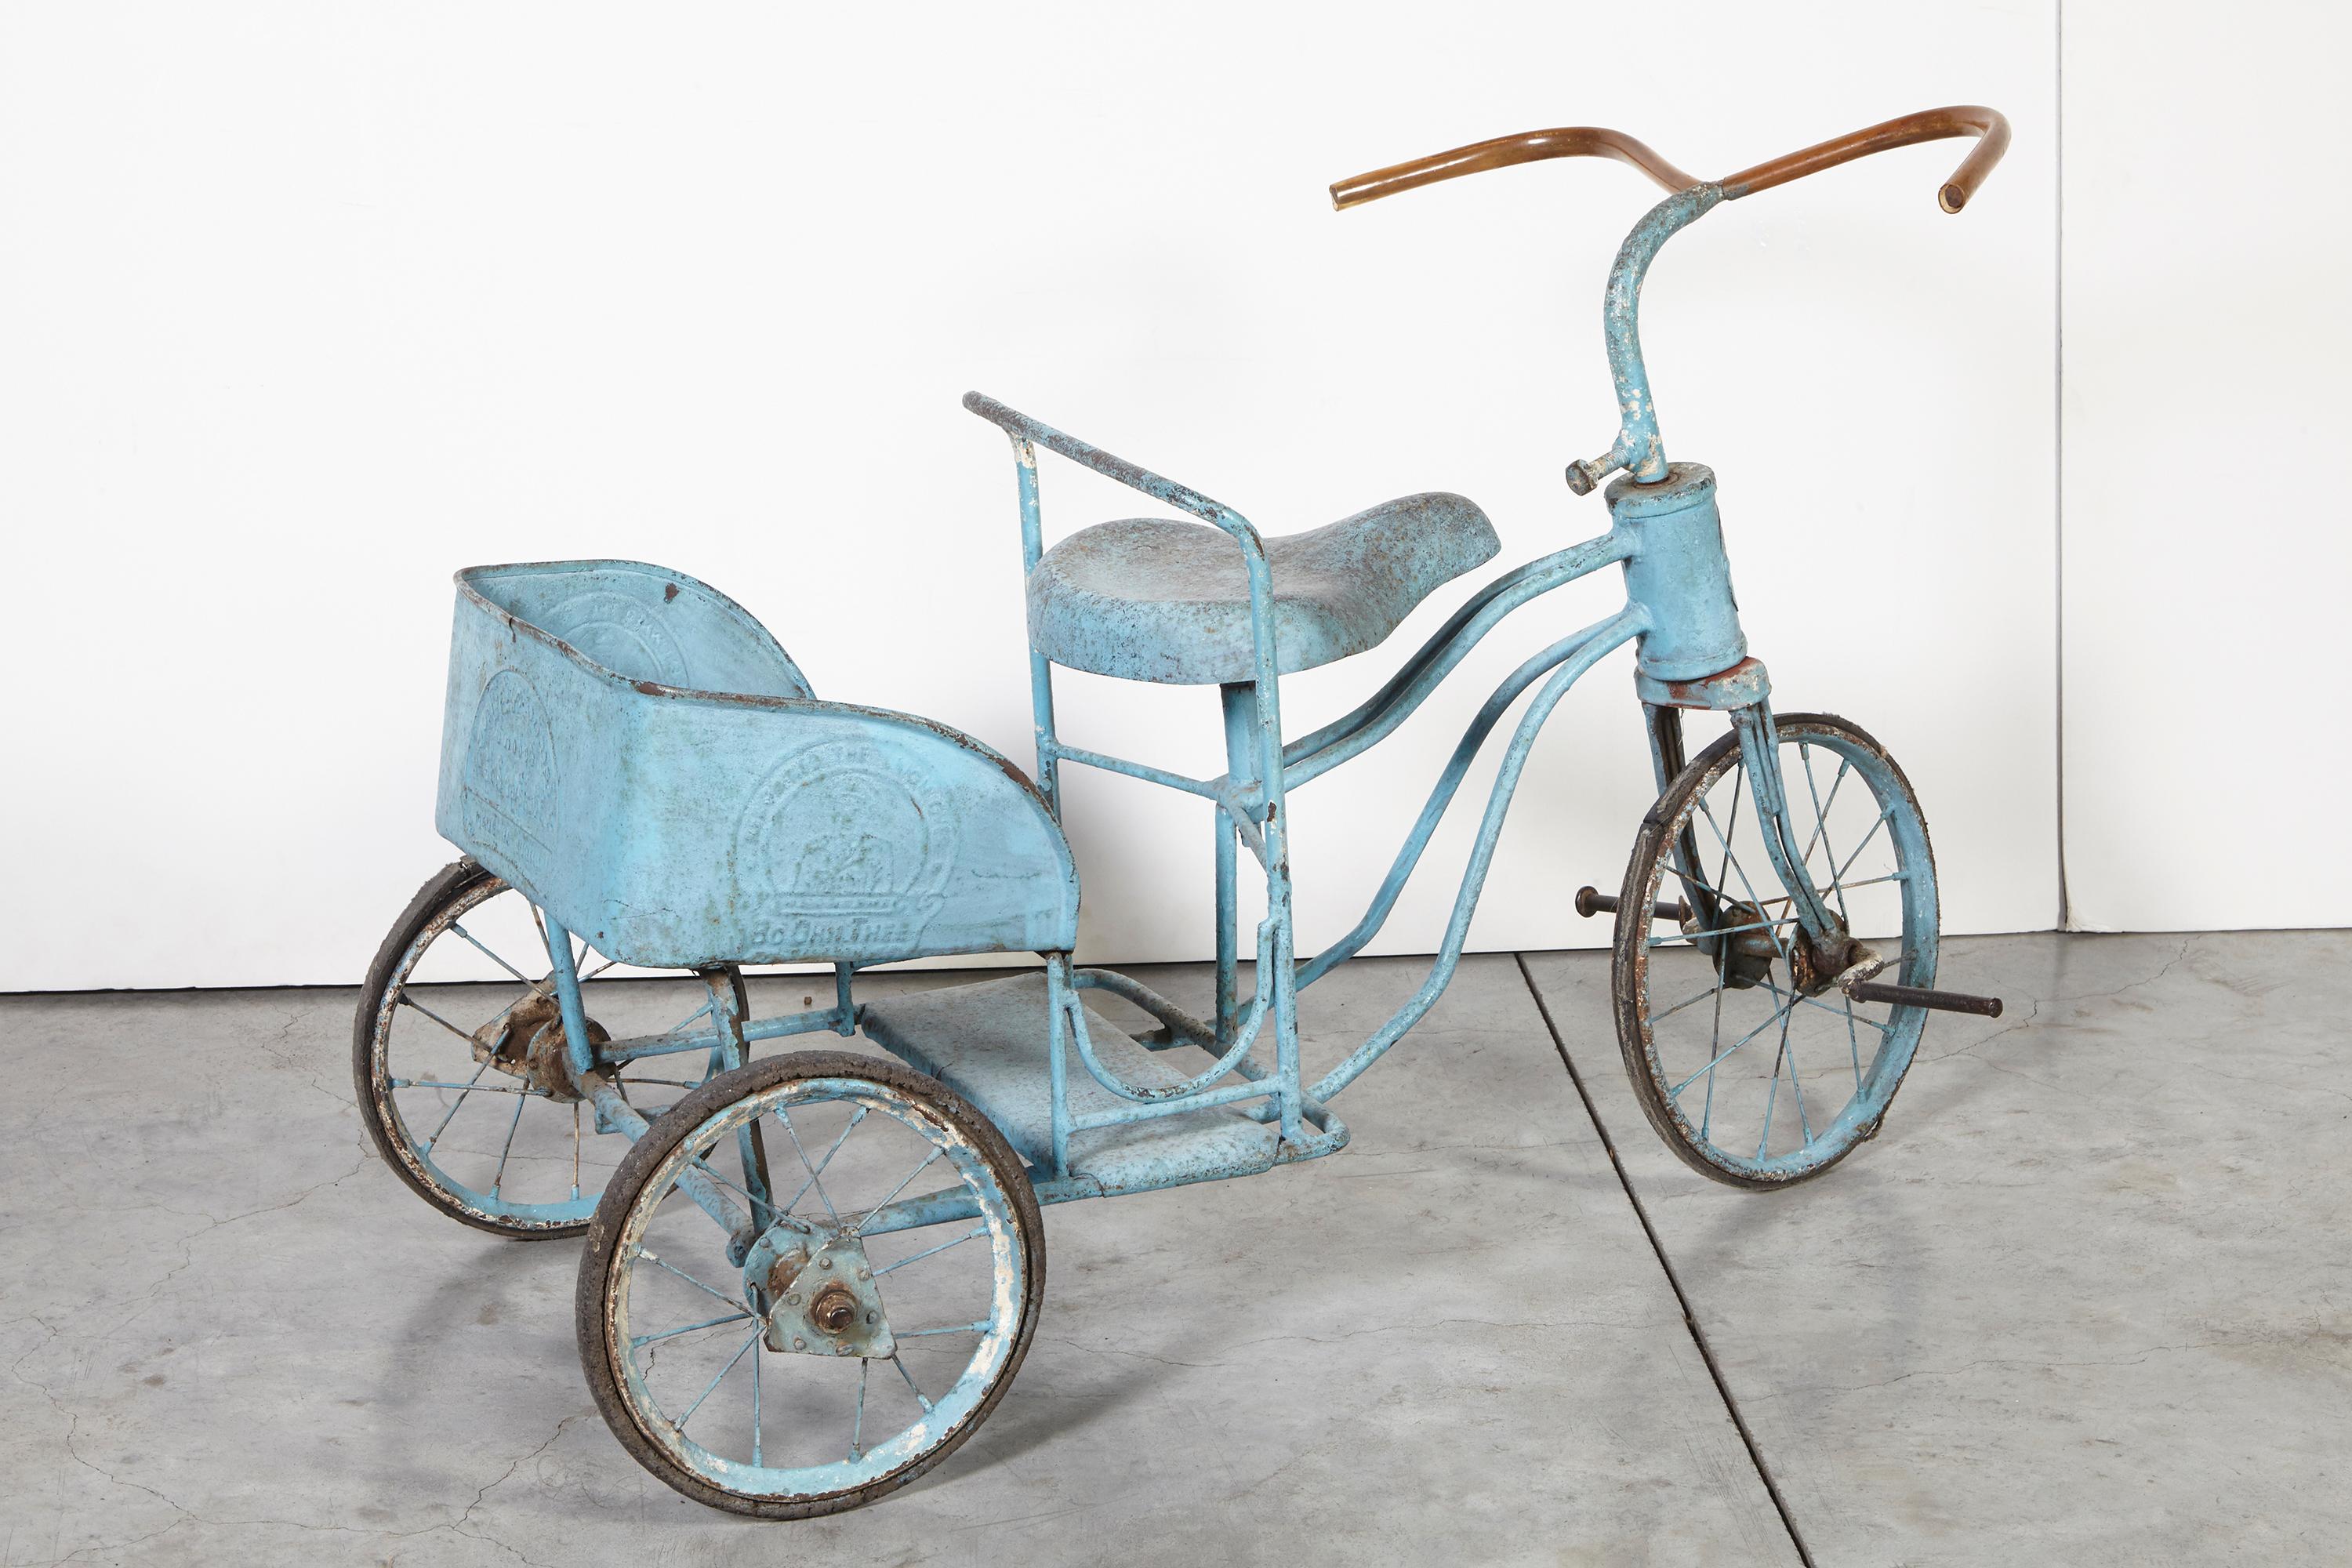 Un adorable tricycle d'enfant birman ancien avec porte-colis et peinture bleue d'origine. Les caractères birmans en relief au dos et sur le côté du porte-bébé ajoutent de l'authenticité et de l'intérêt. Un objet insolite et magnifique.